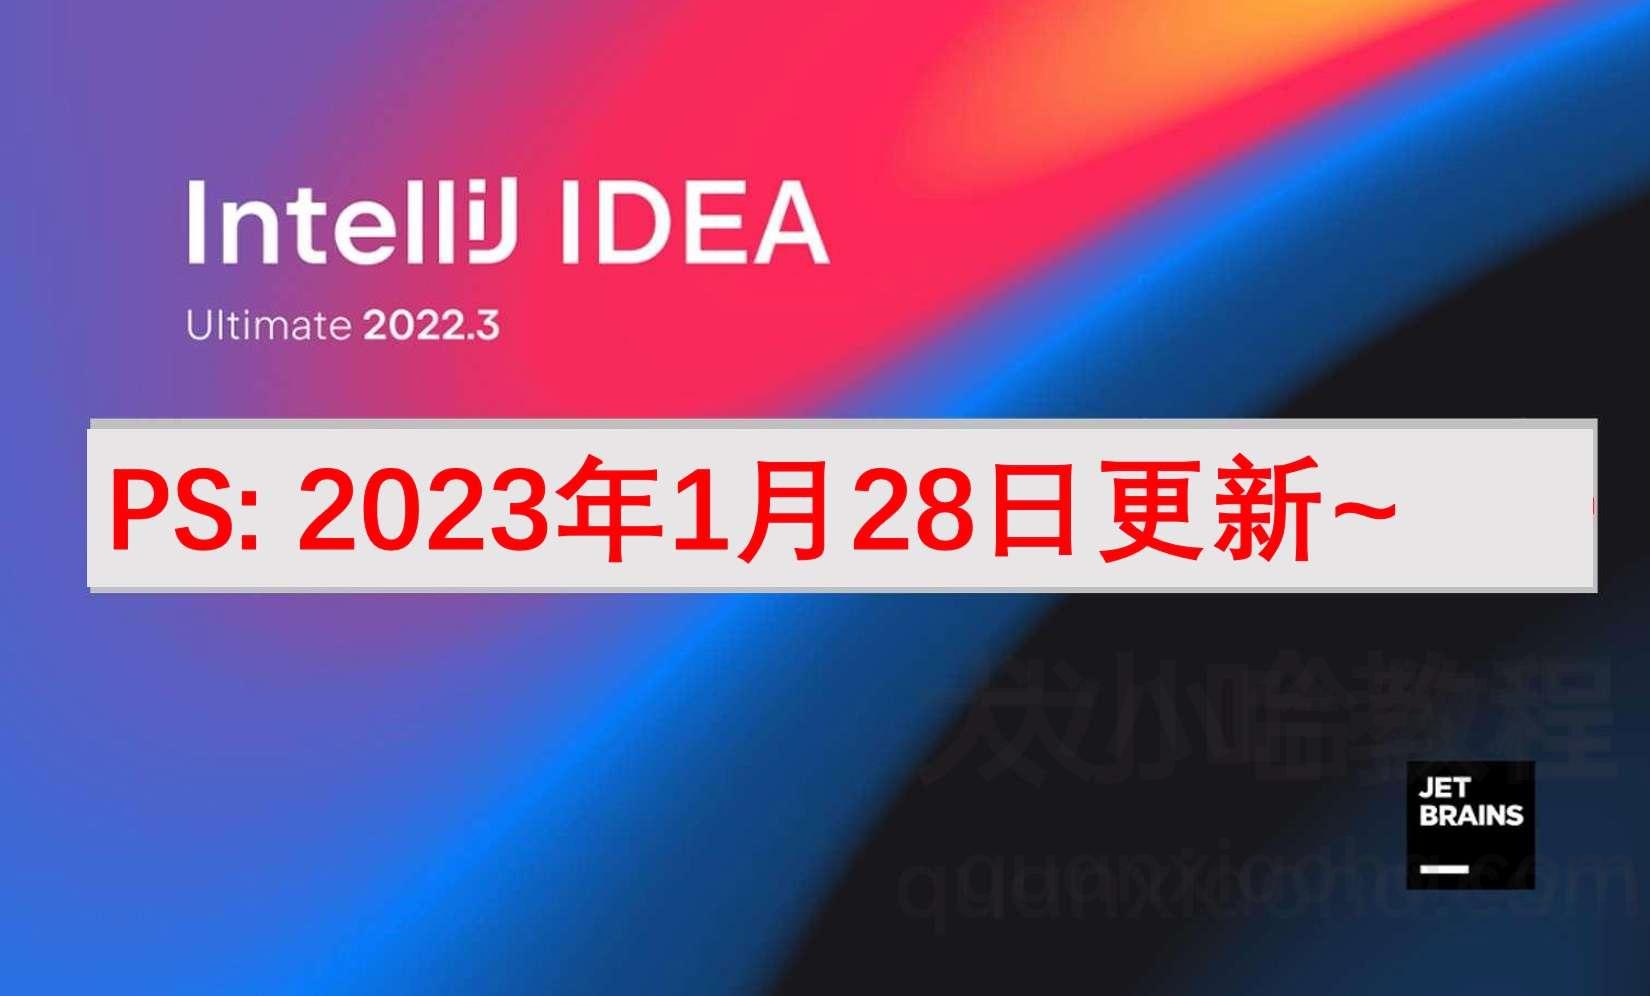 IDEA 2022 永久激活方法分享 (亲测好用)